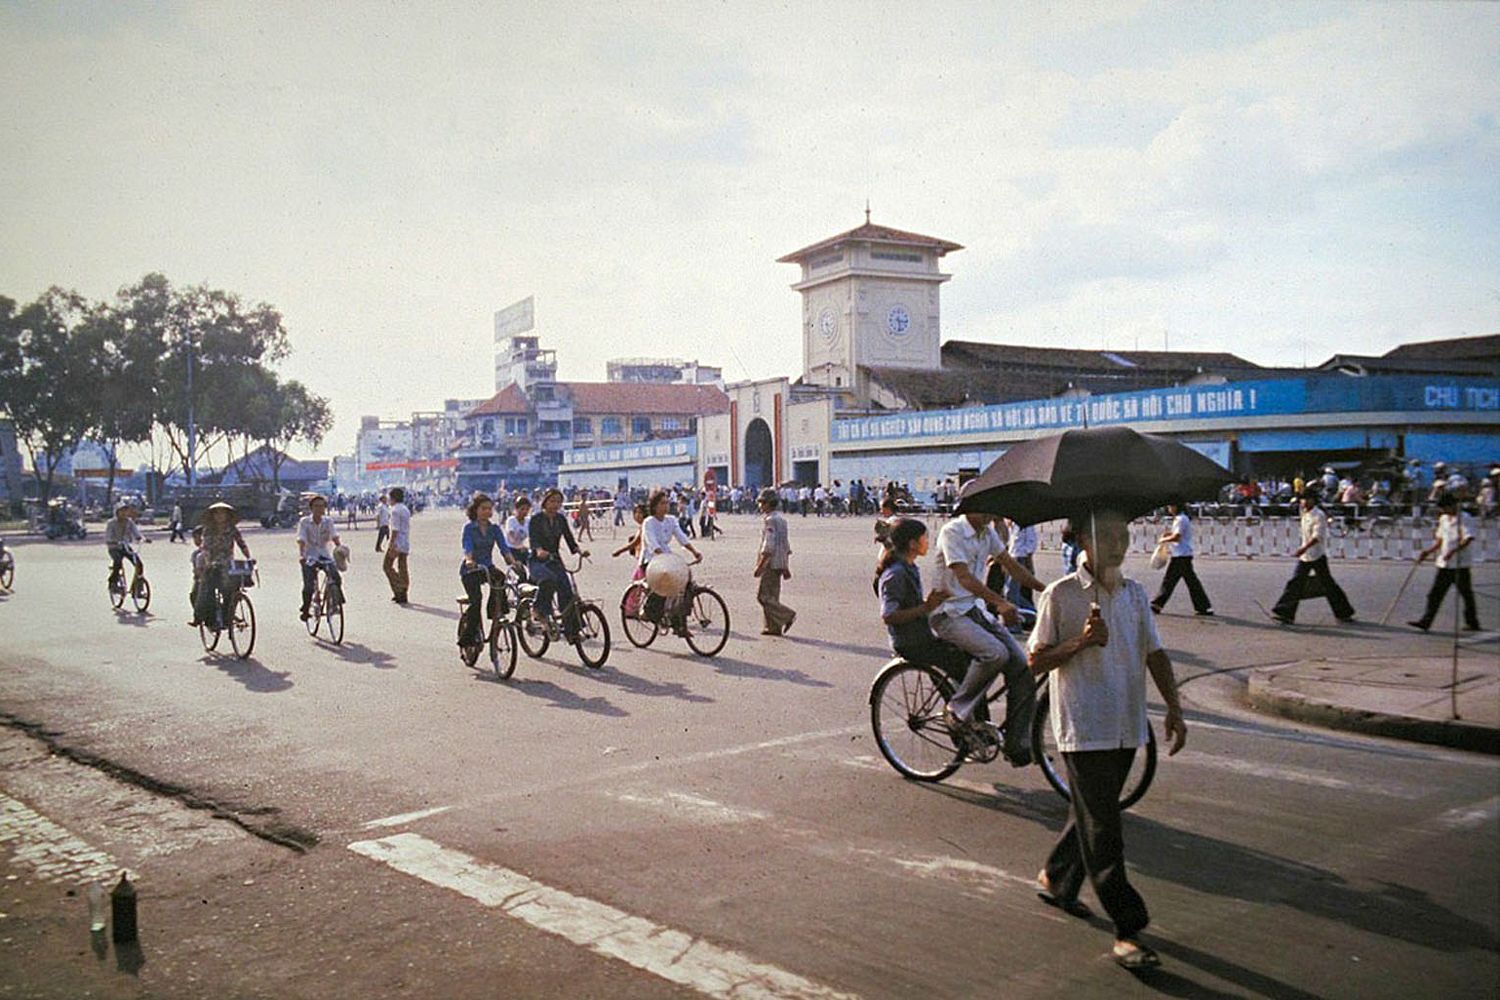 Năm 1979 Saigon đã đi qua những biến động lớn và để lại nhiều ký ức cho người dân thành phố. Hãy xem hình ảnh liên quan để tưởng nhớ quá khứ và cảm nhận sự thay đổi của đất nước.